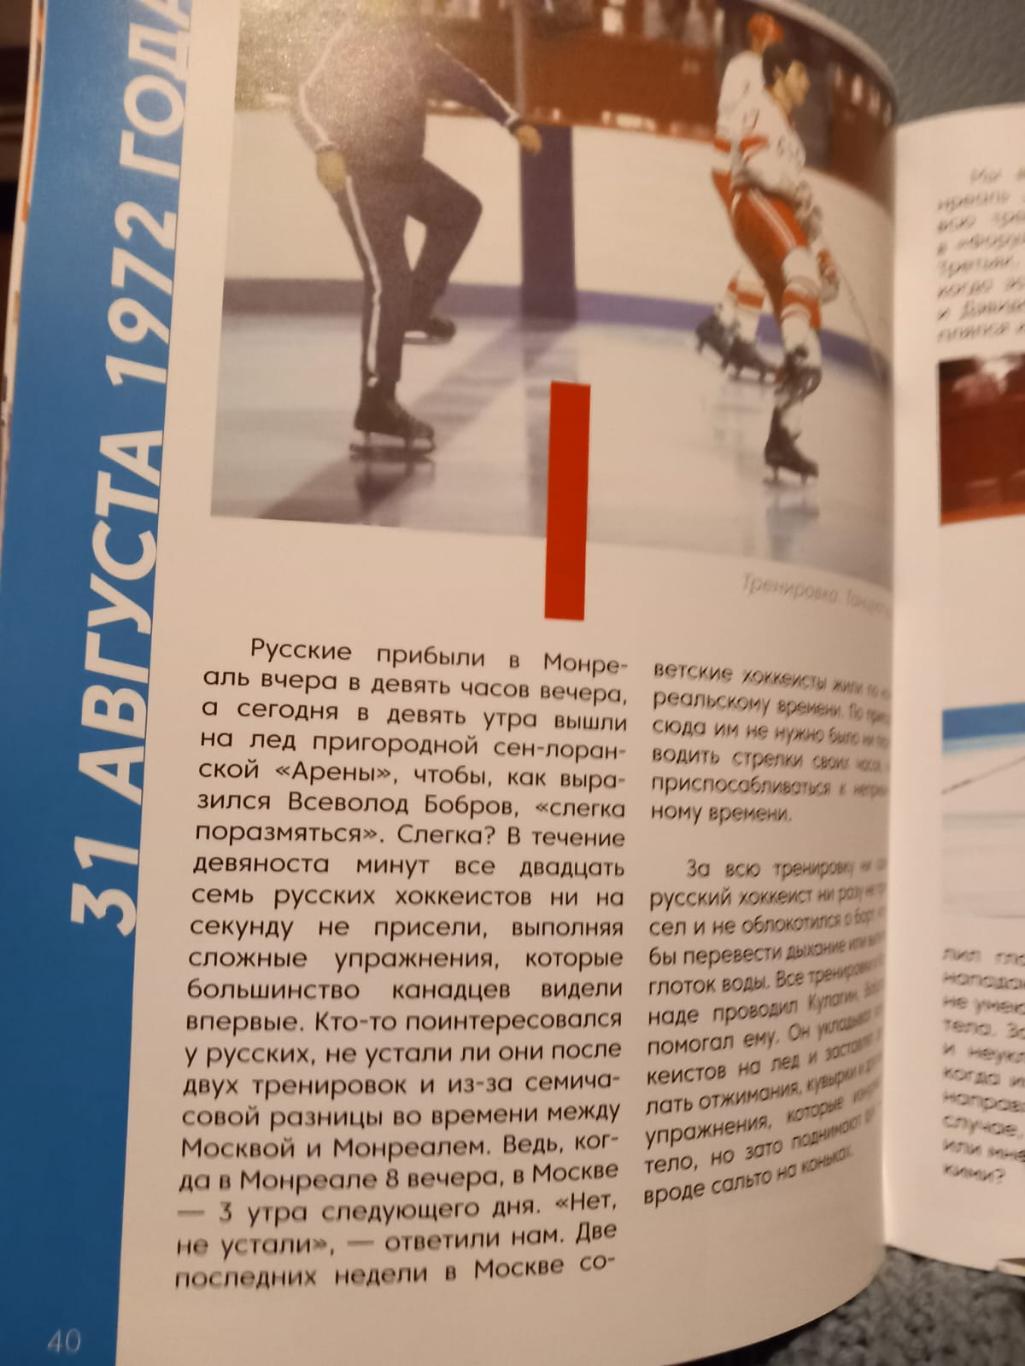 Книга о памятных матчах СССР/Россия - Канада 2